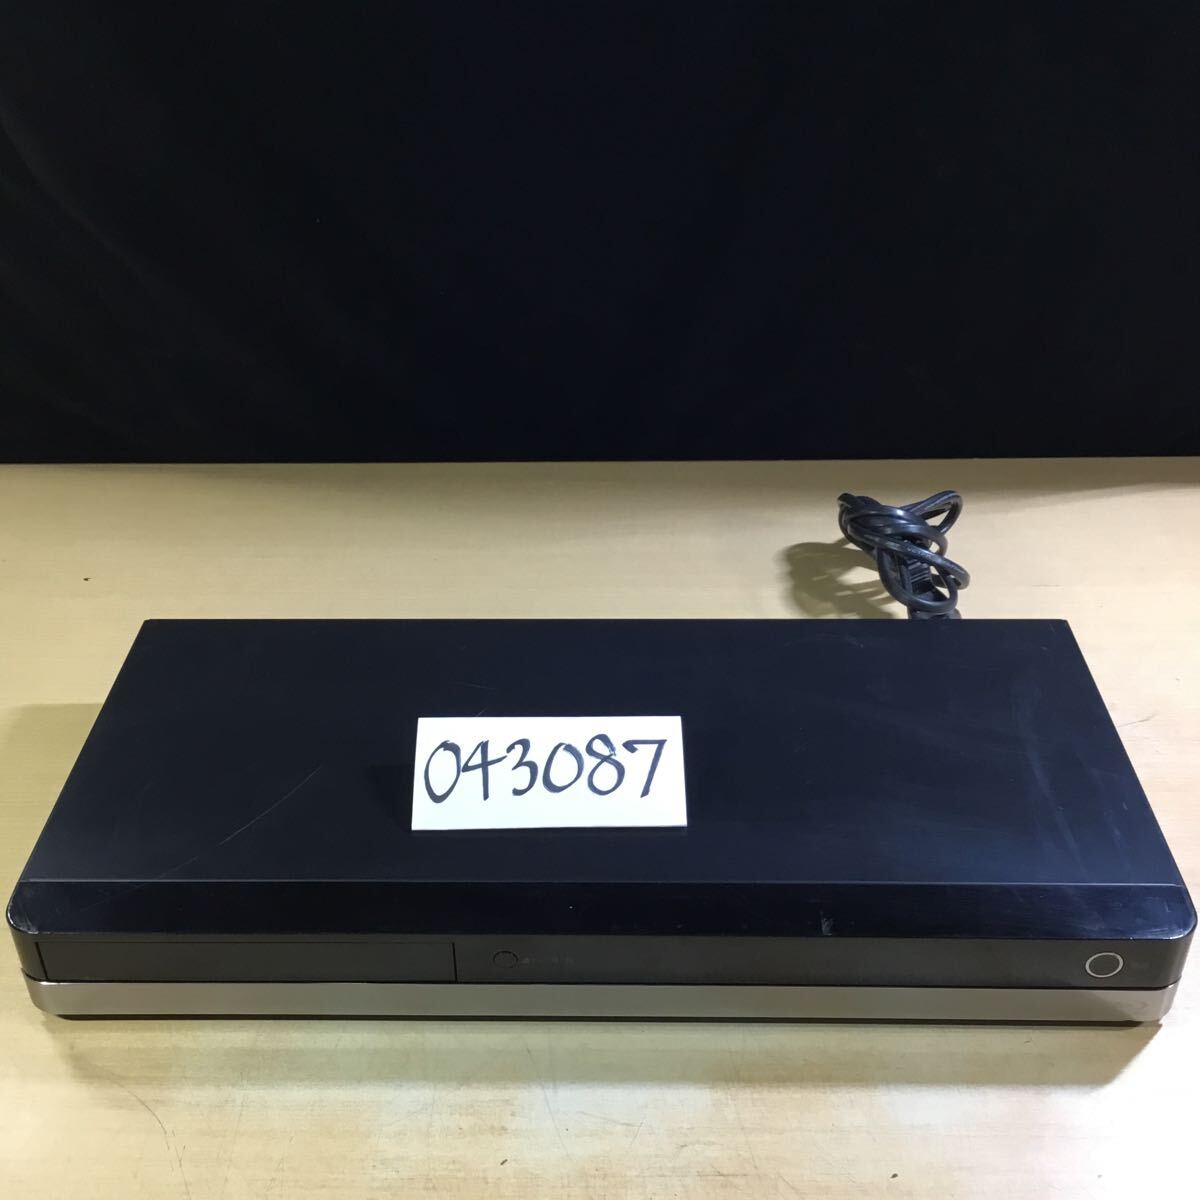 【送料無料】(043087F) 2012年製 TOSHIBA DBR-T360 ブルーレイディスクレコーダー ジャンク品_画像1